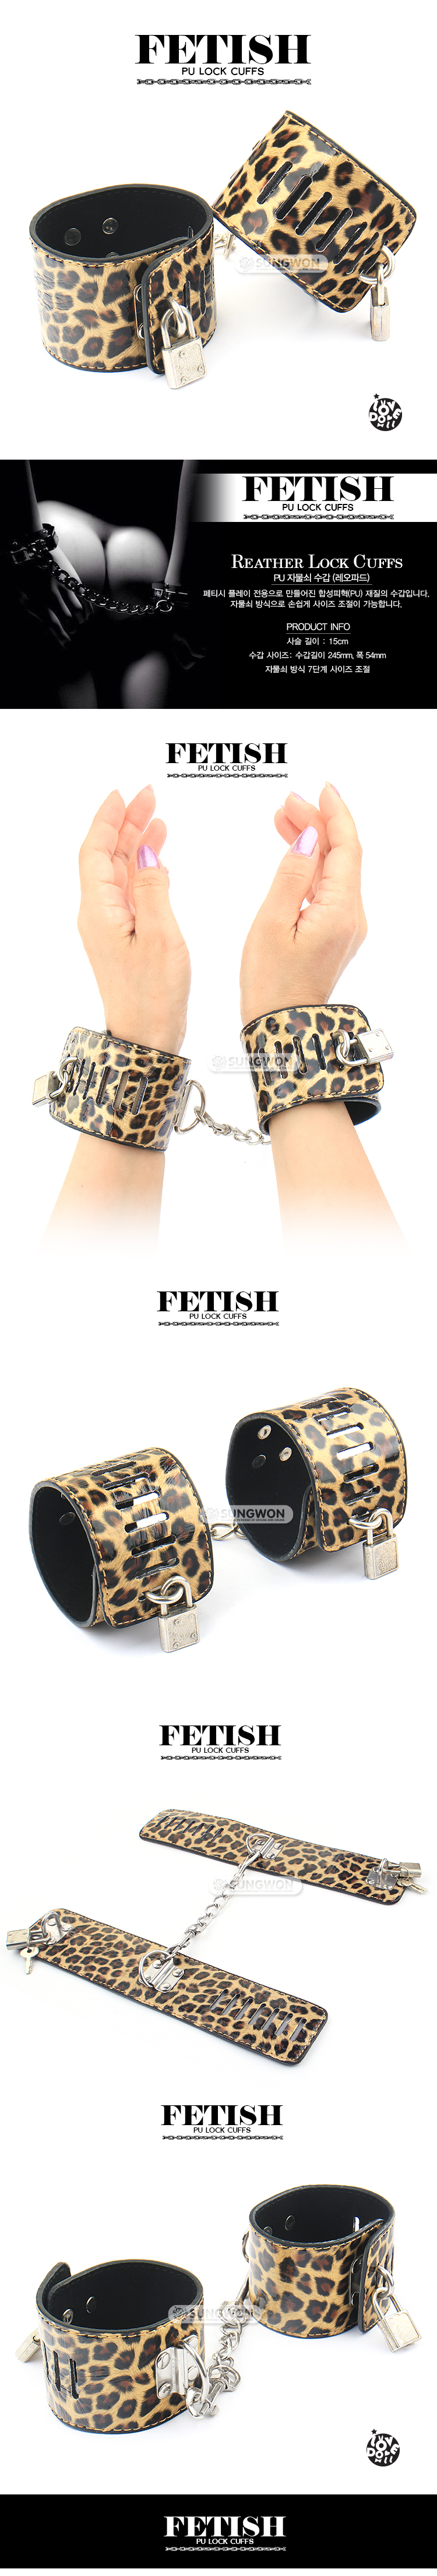 reather-cuff(leopard)_142319.jpg